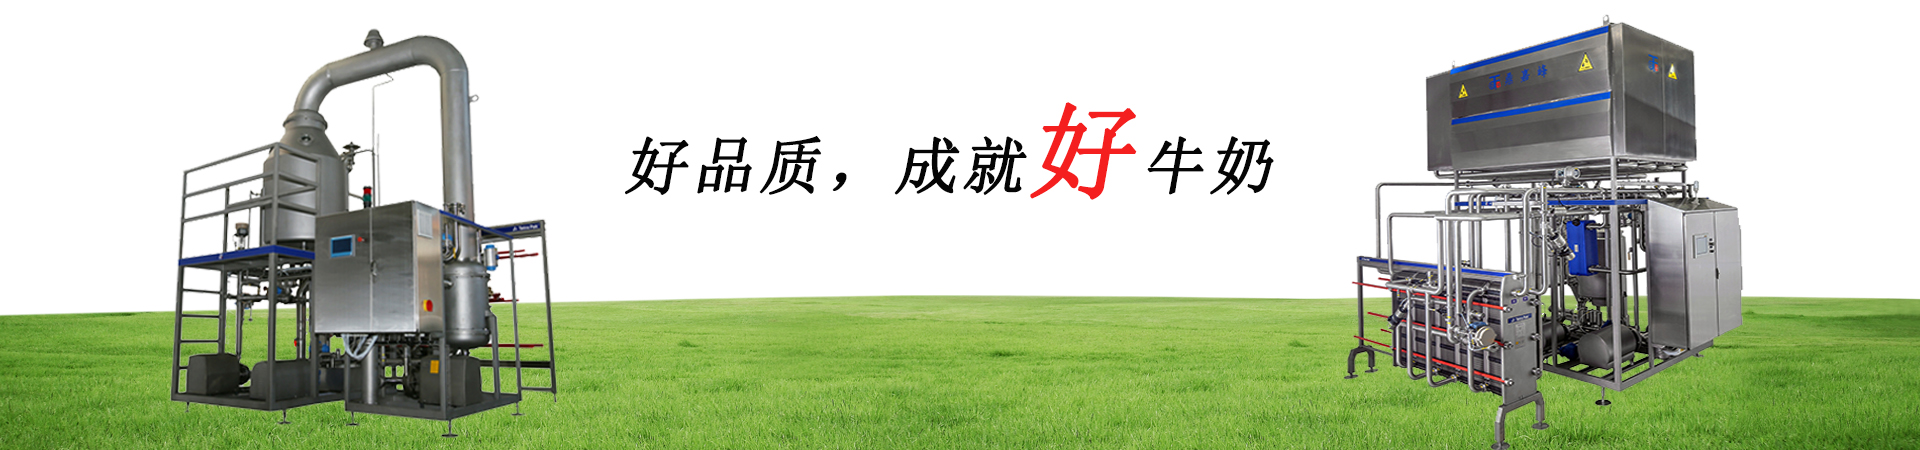 关于当前产品365bet体育·(中国)官方网站的成功案例等相关图片